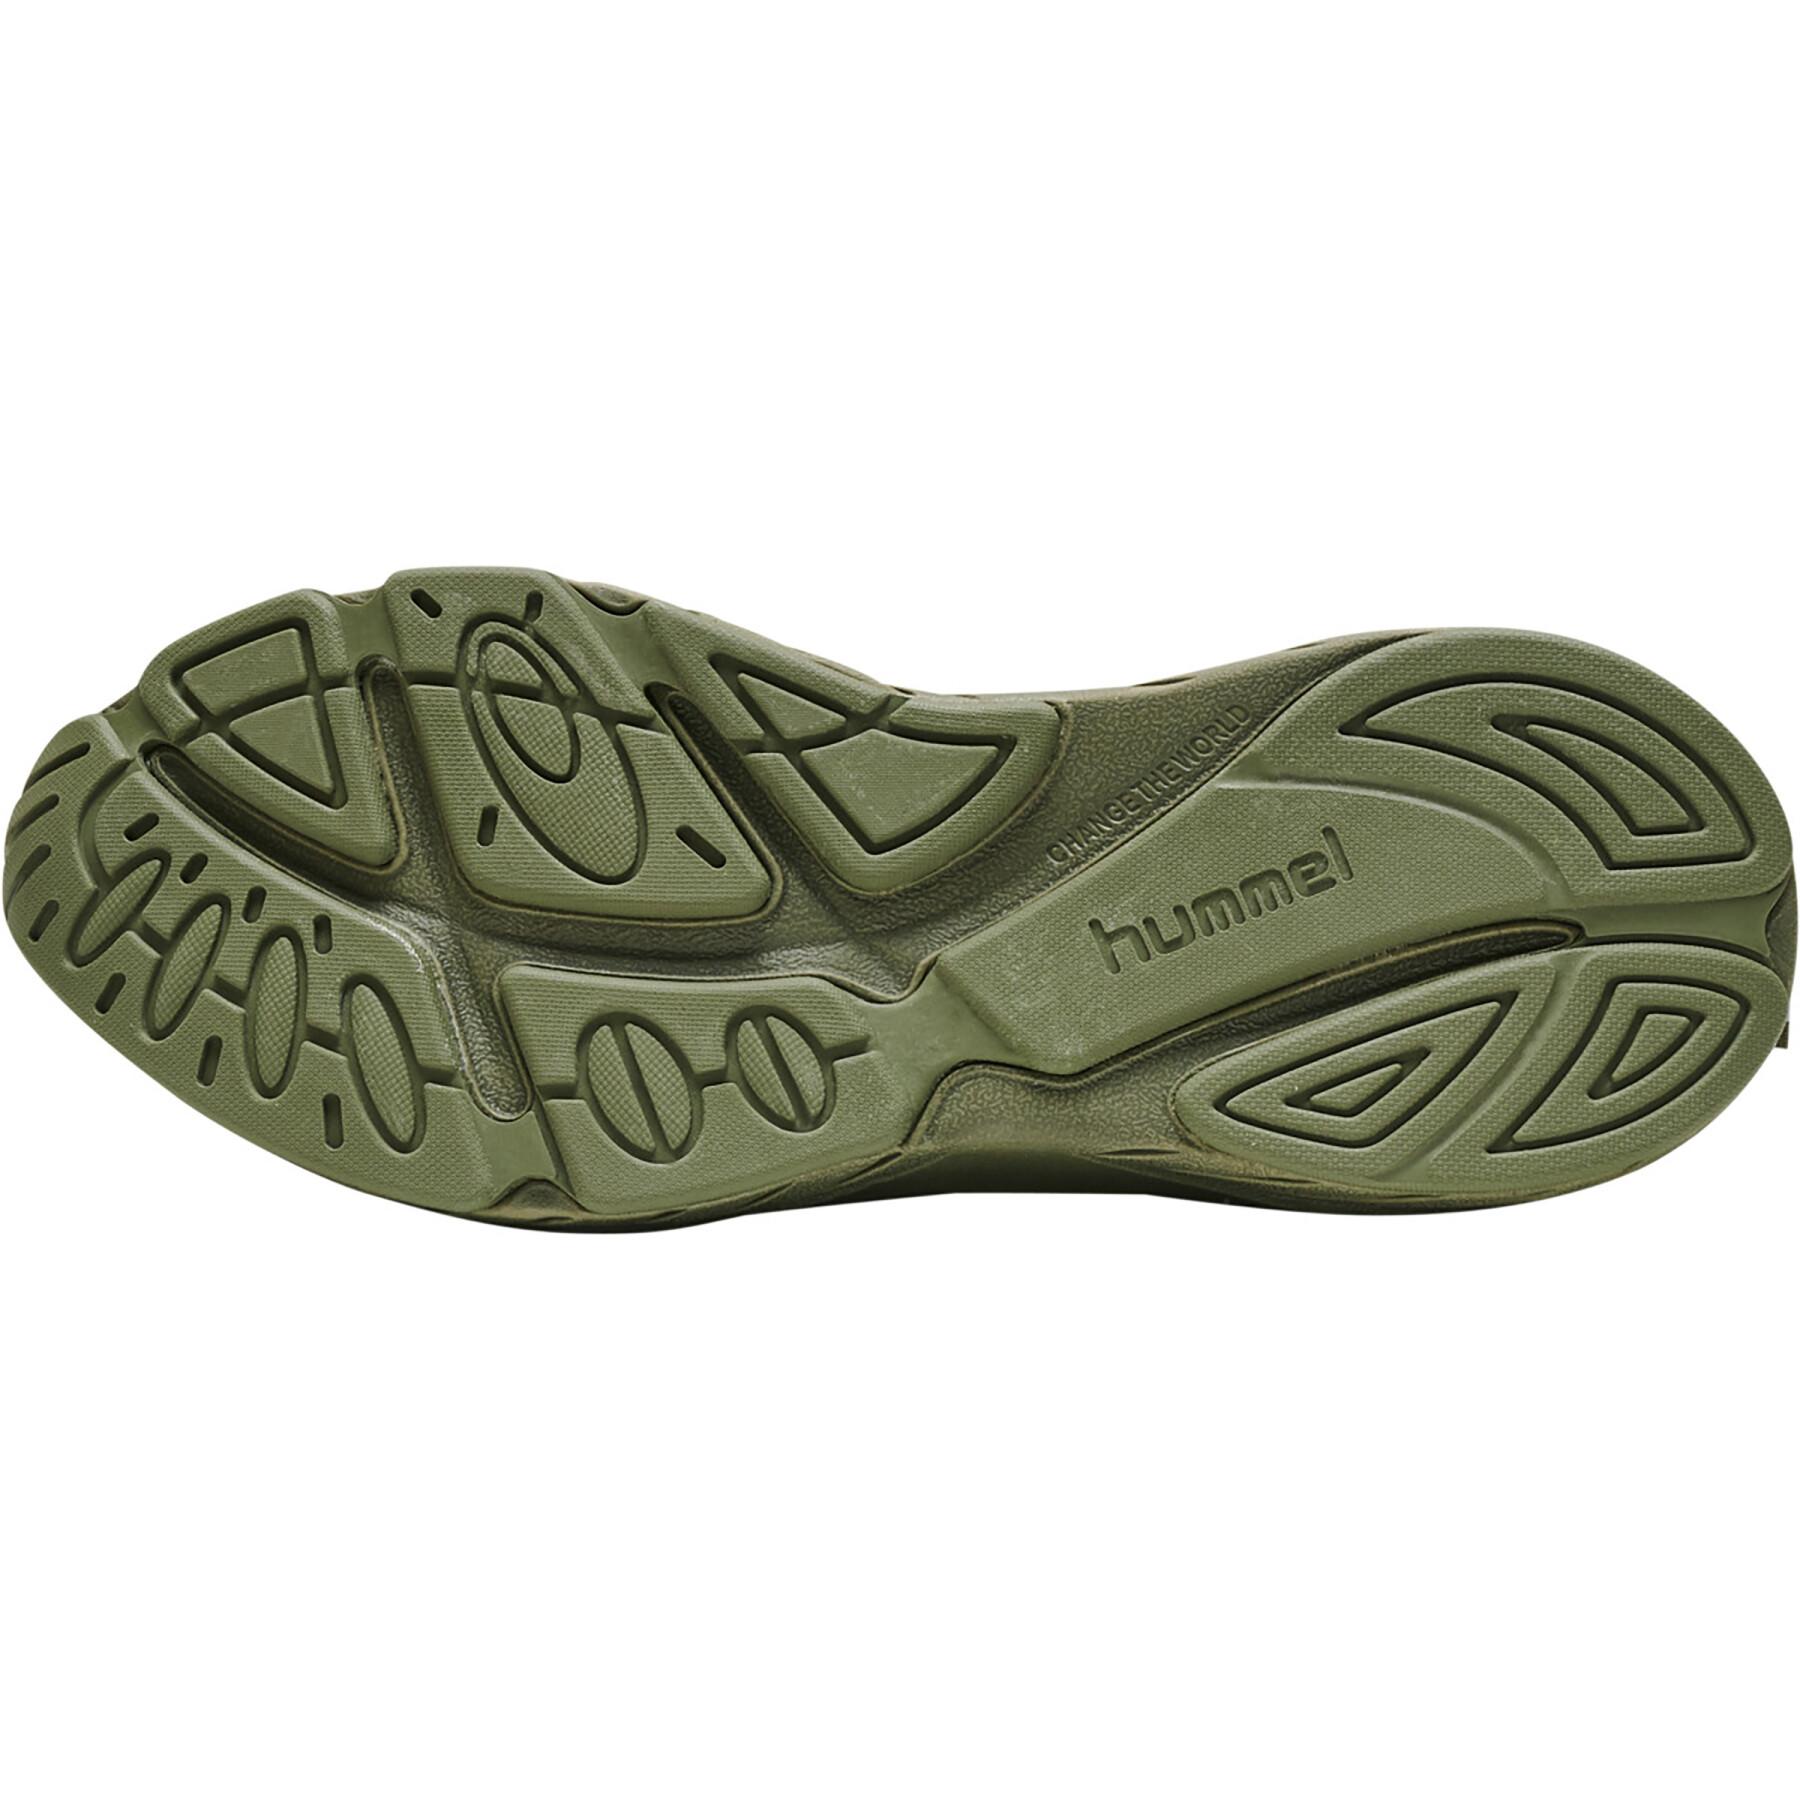 Sneakers Hummel Marathona